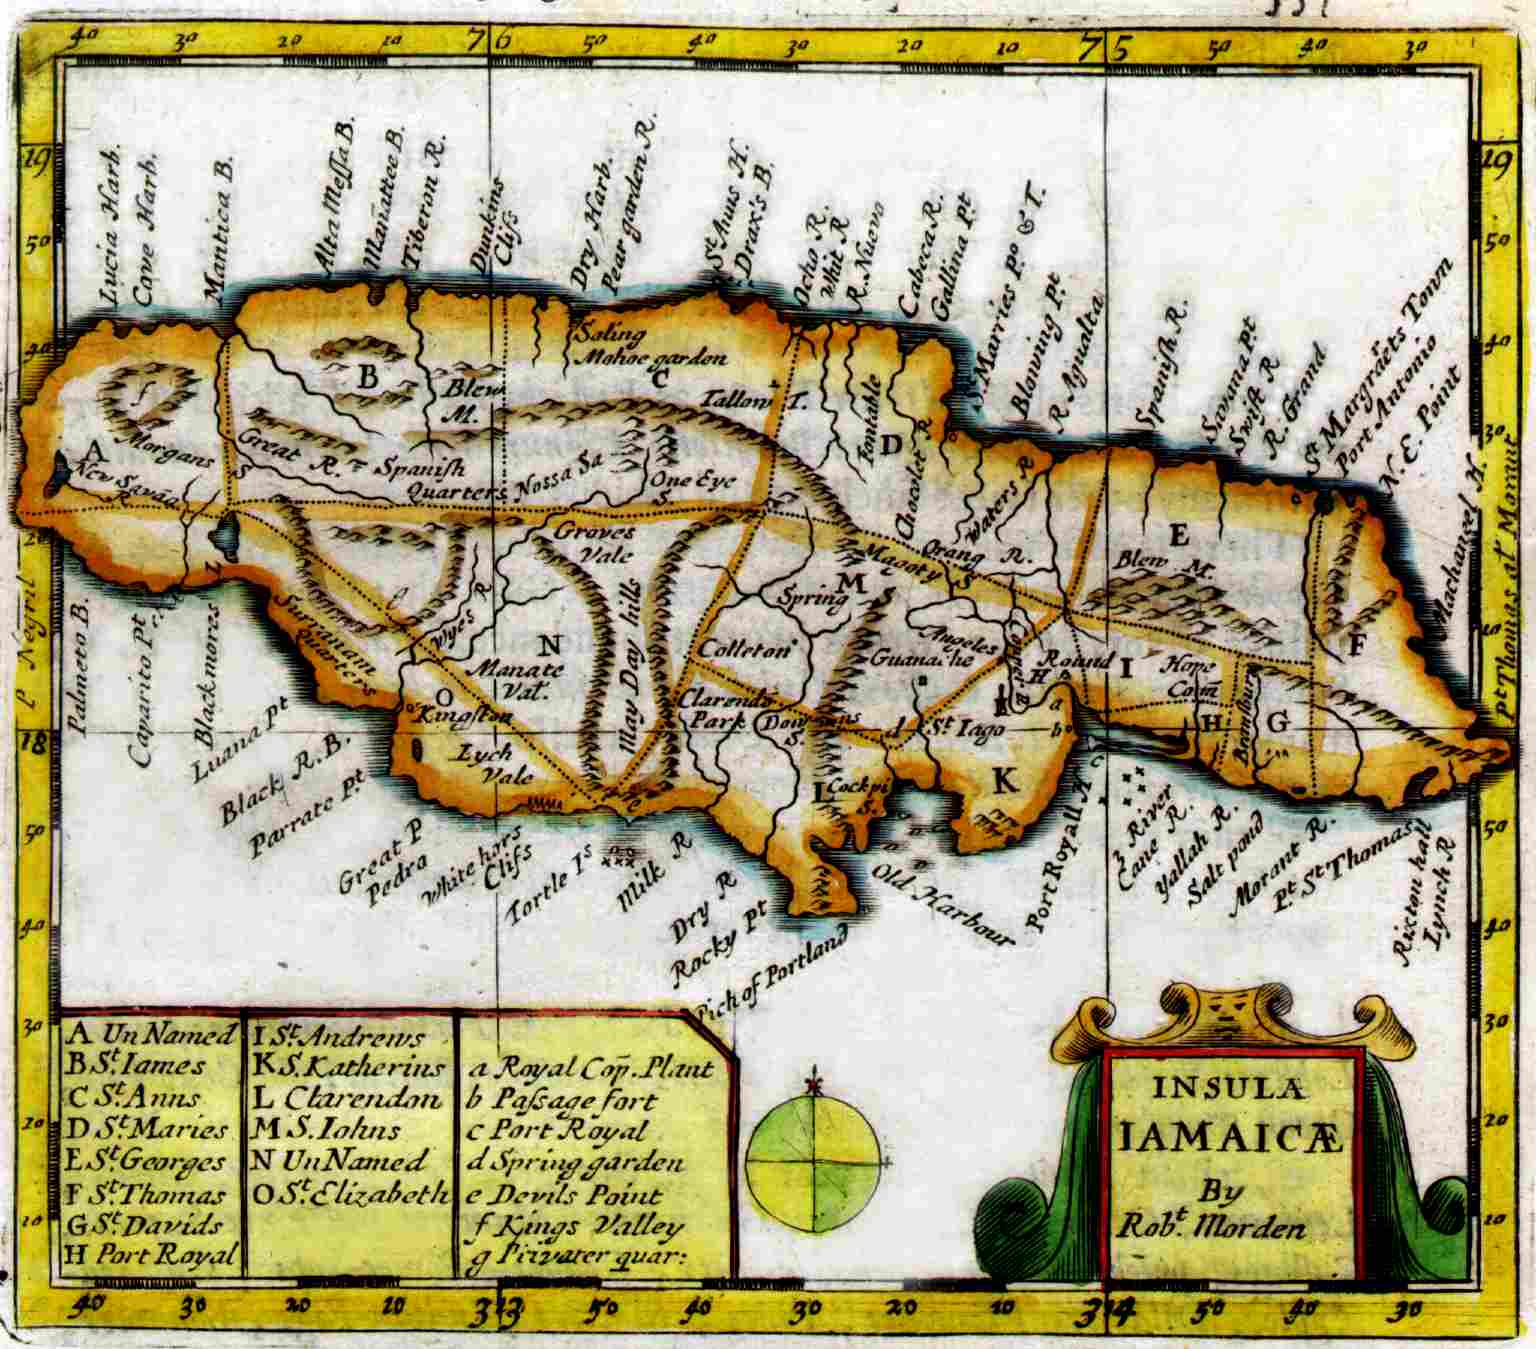 Robert Morden's 1688 Insula Jamaica map